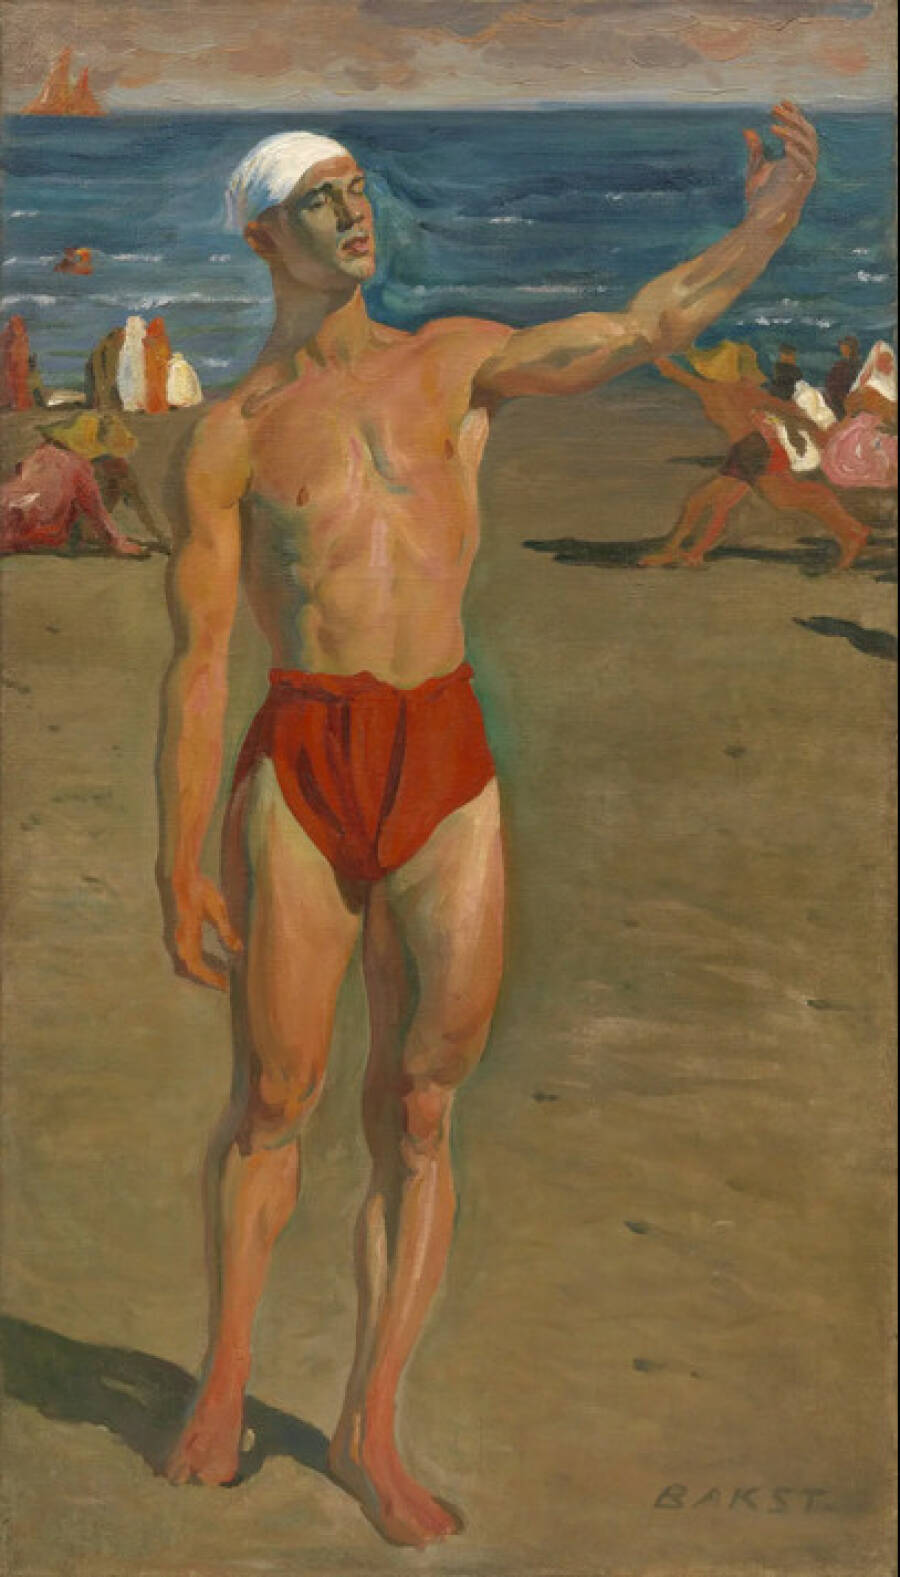 Картина «Вацлав Нижинский». 1903 год. Нью-Йоркский музей современного искусства.